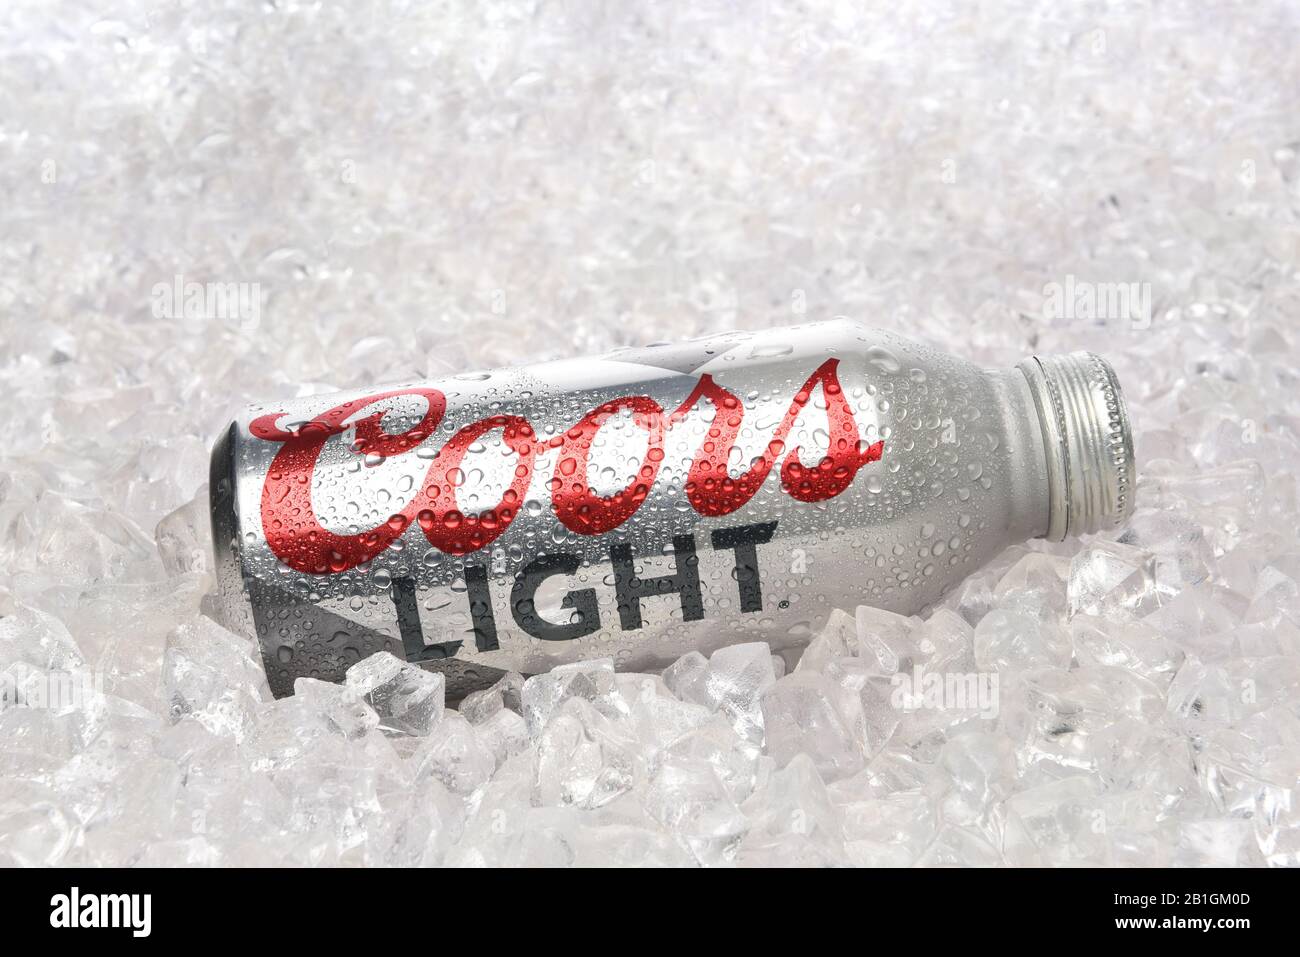 Irvine, CALIFORNIE - 15 AVRIL, 22019: Une bouteille de pinte en aluminium clair Coors posée dans un lit de glace. Banque D'Images